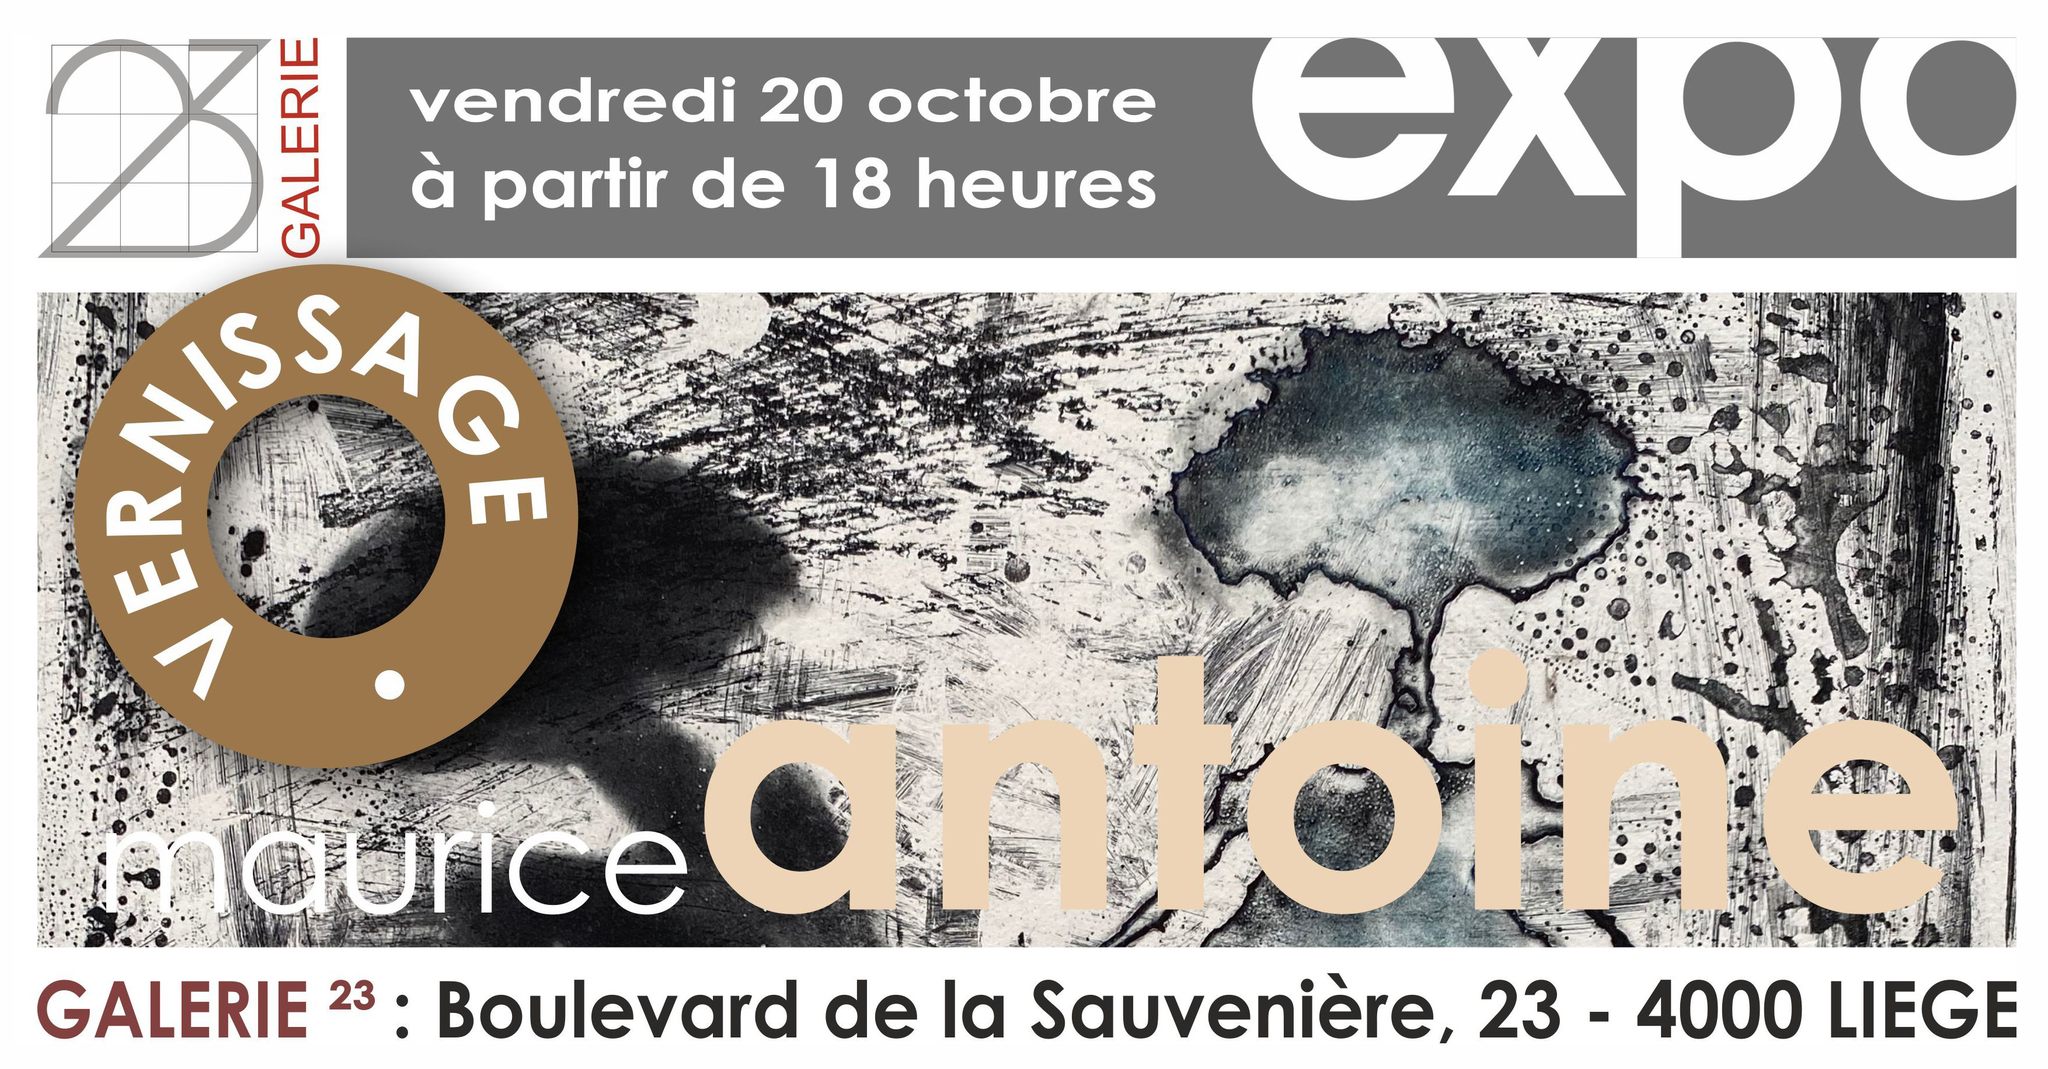 La Galerie 23 présente "mémoire & résistance" du graveur Maurice Antoine